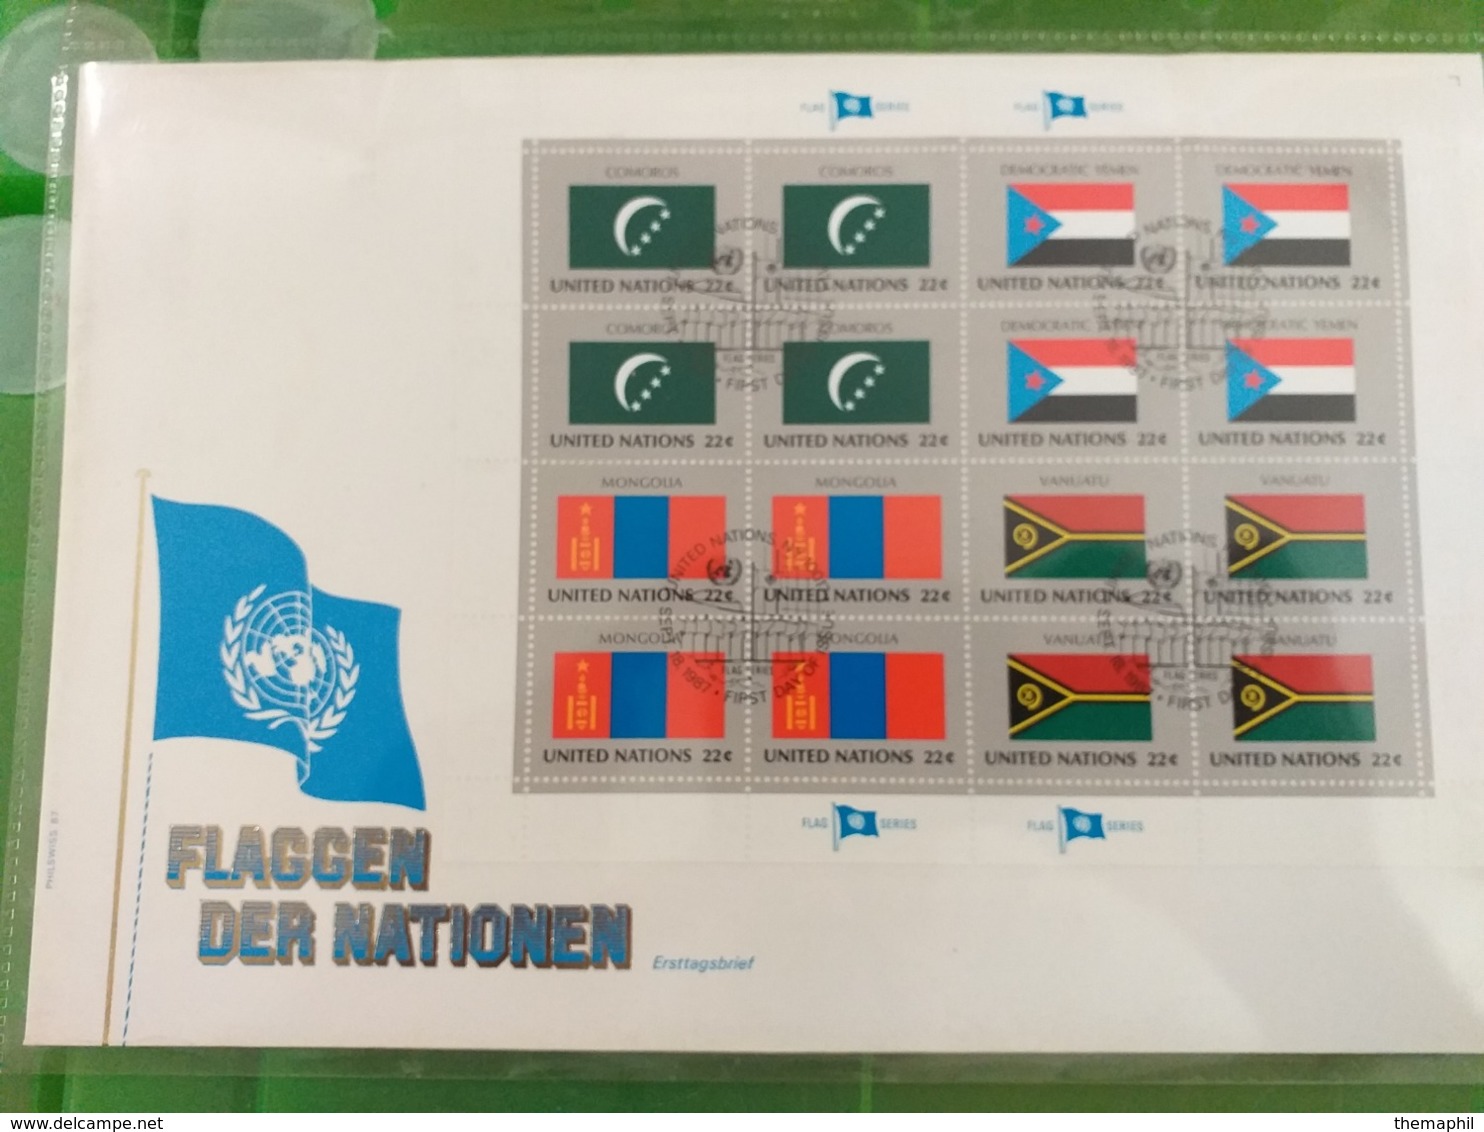 lot n° TH.1099 NATIONS UNIS un bon classeur de timbres neufs ** dont le bloc n° 1 neufs ** + un lot  series drapeaux